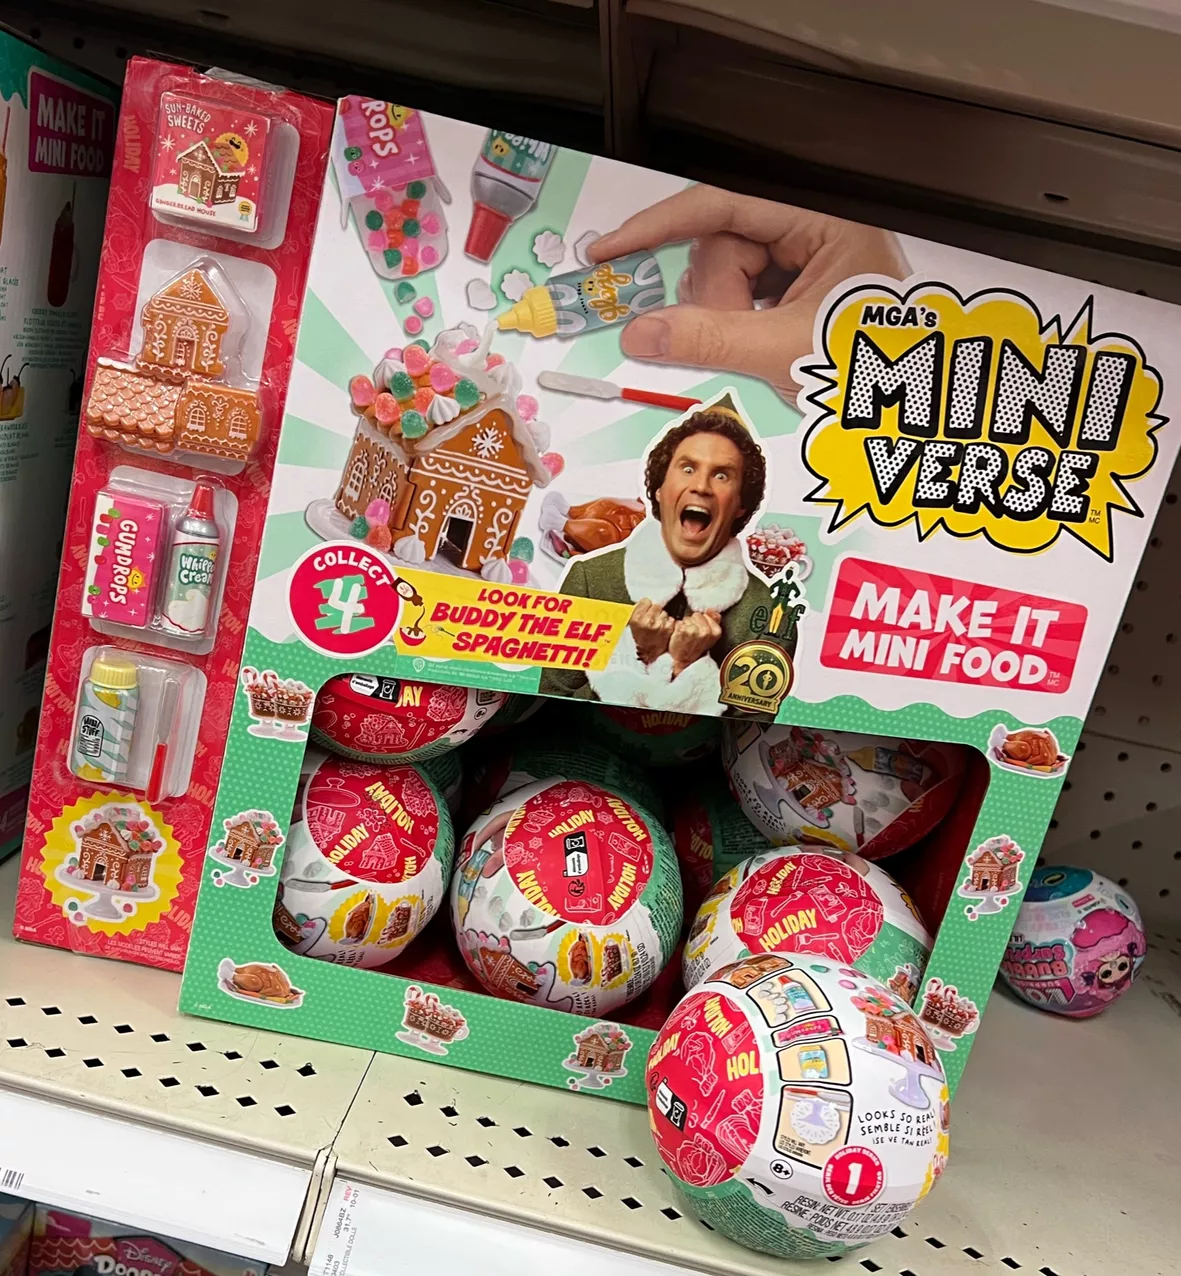 MGA's Miniverse Make It Mini Food Holiday Series 1 